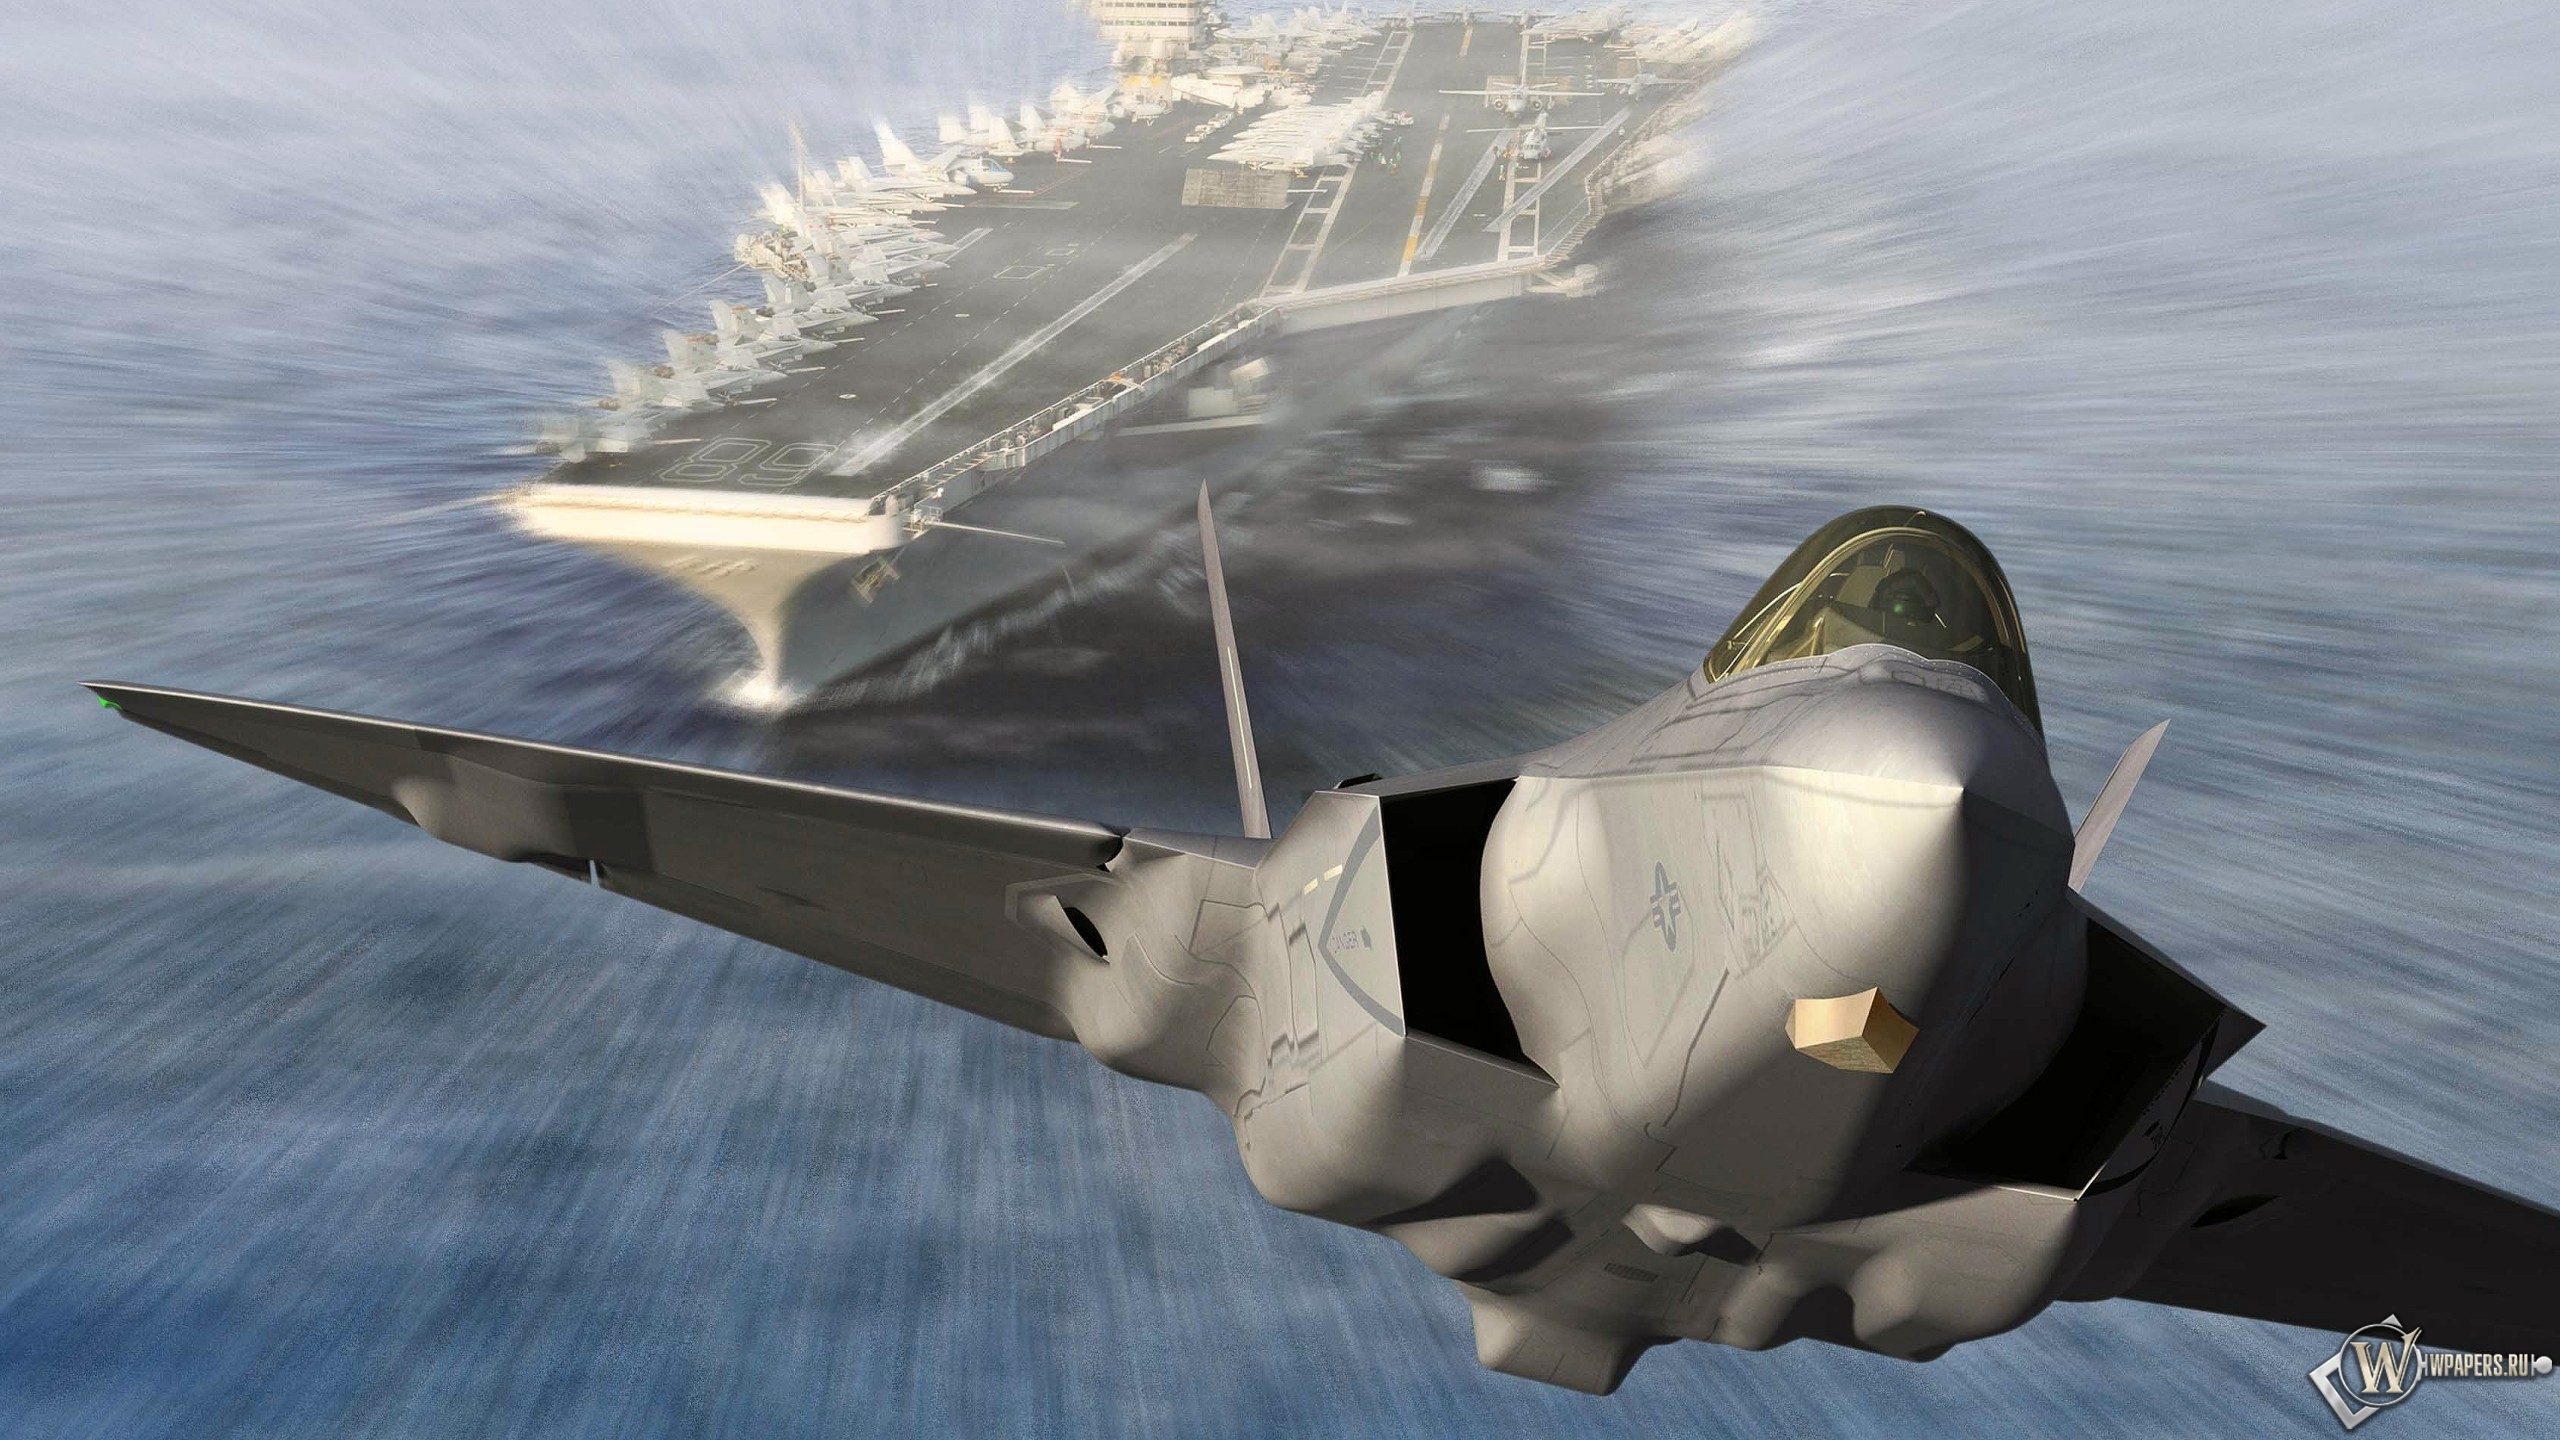 Запуск Lockheed Martin F-35C Lightning II из авианосца 2560x1440